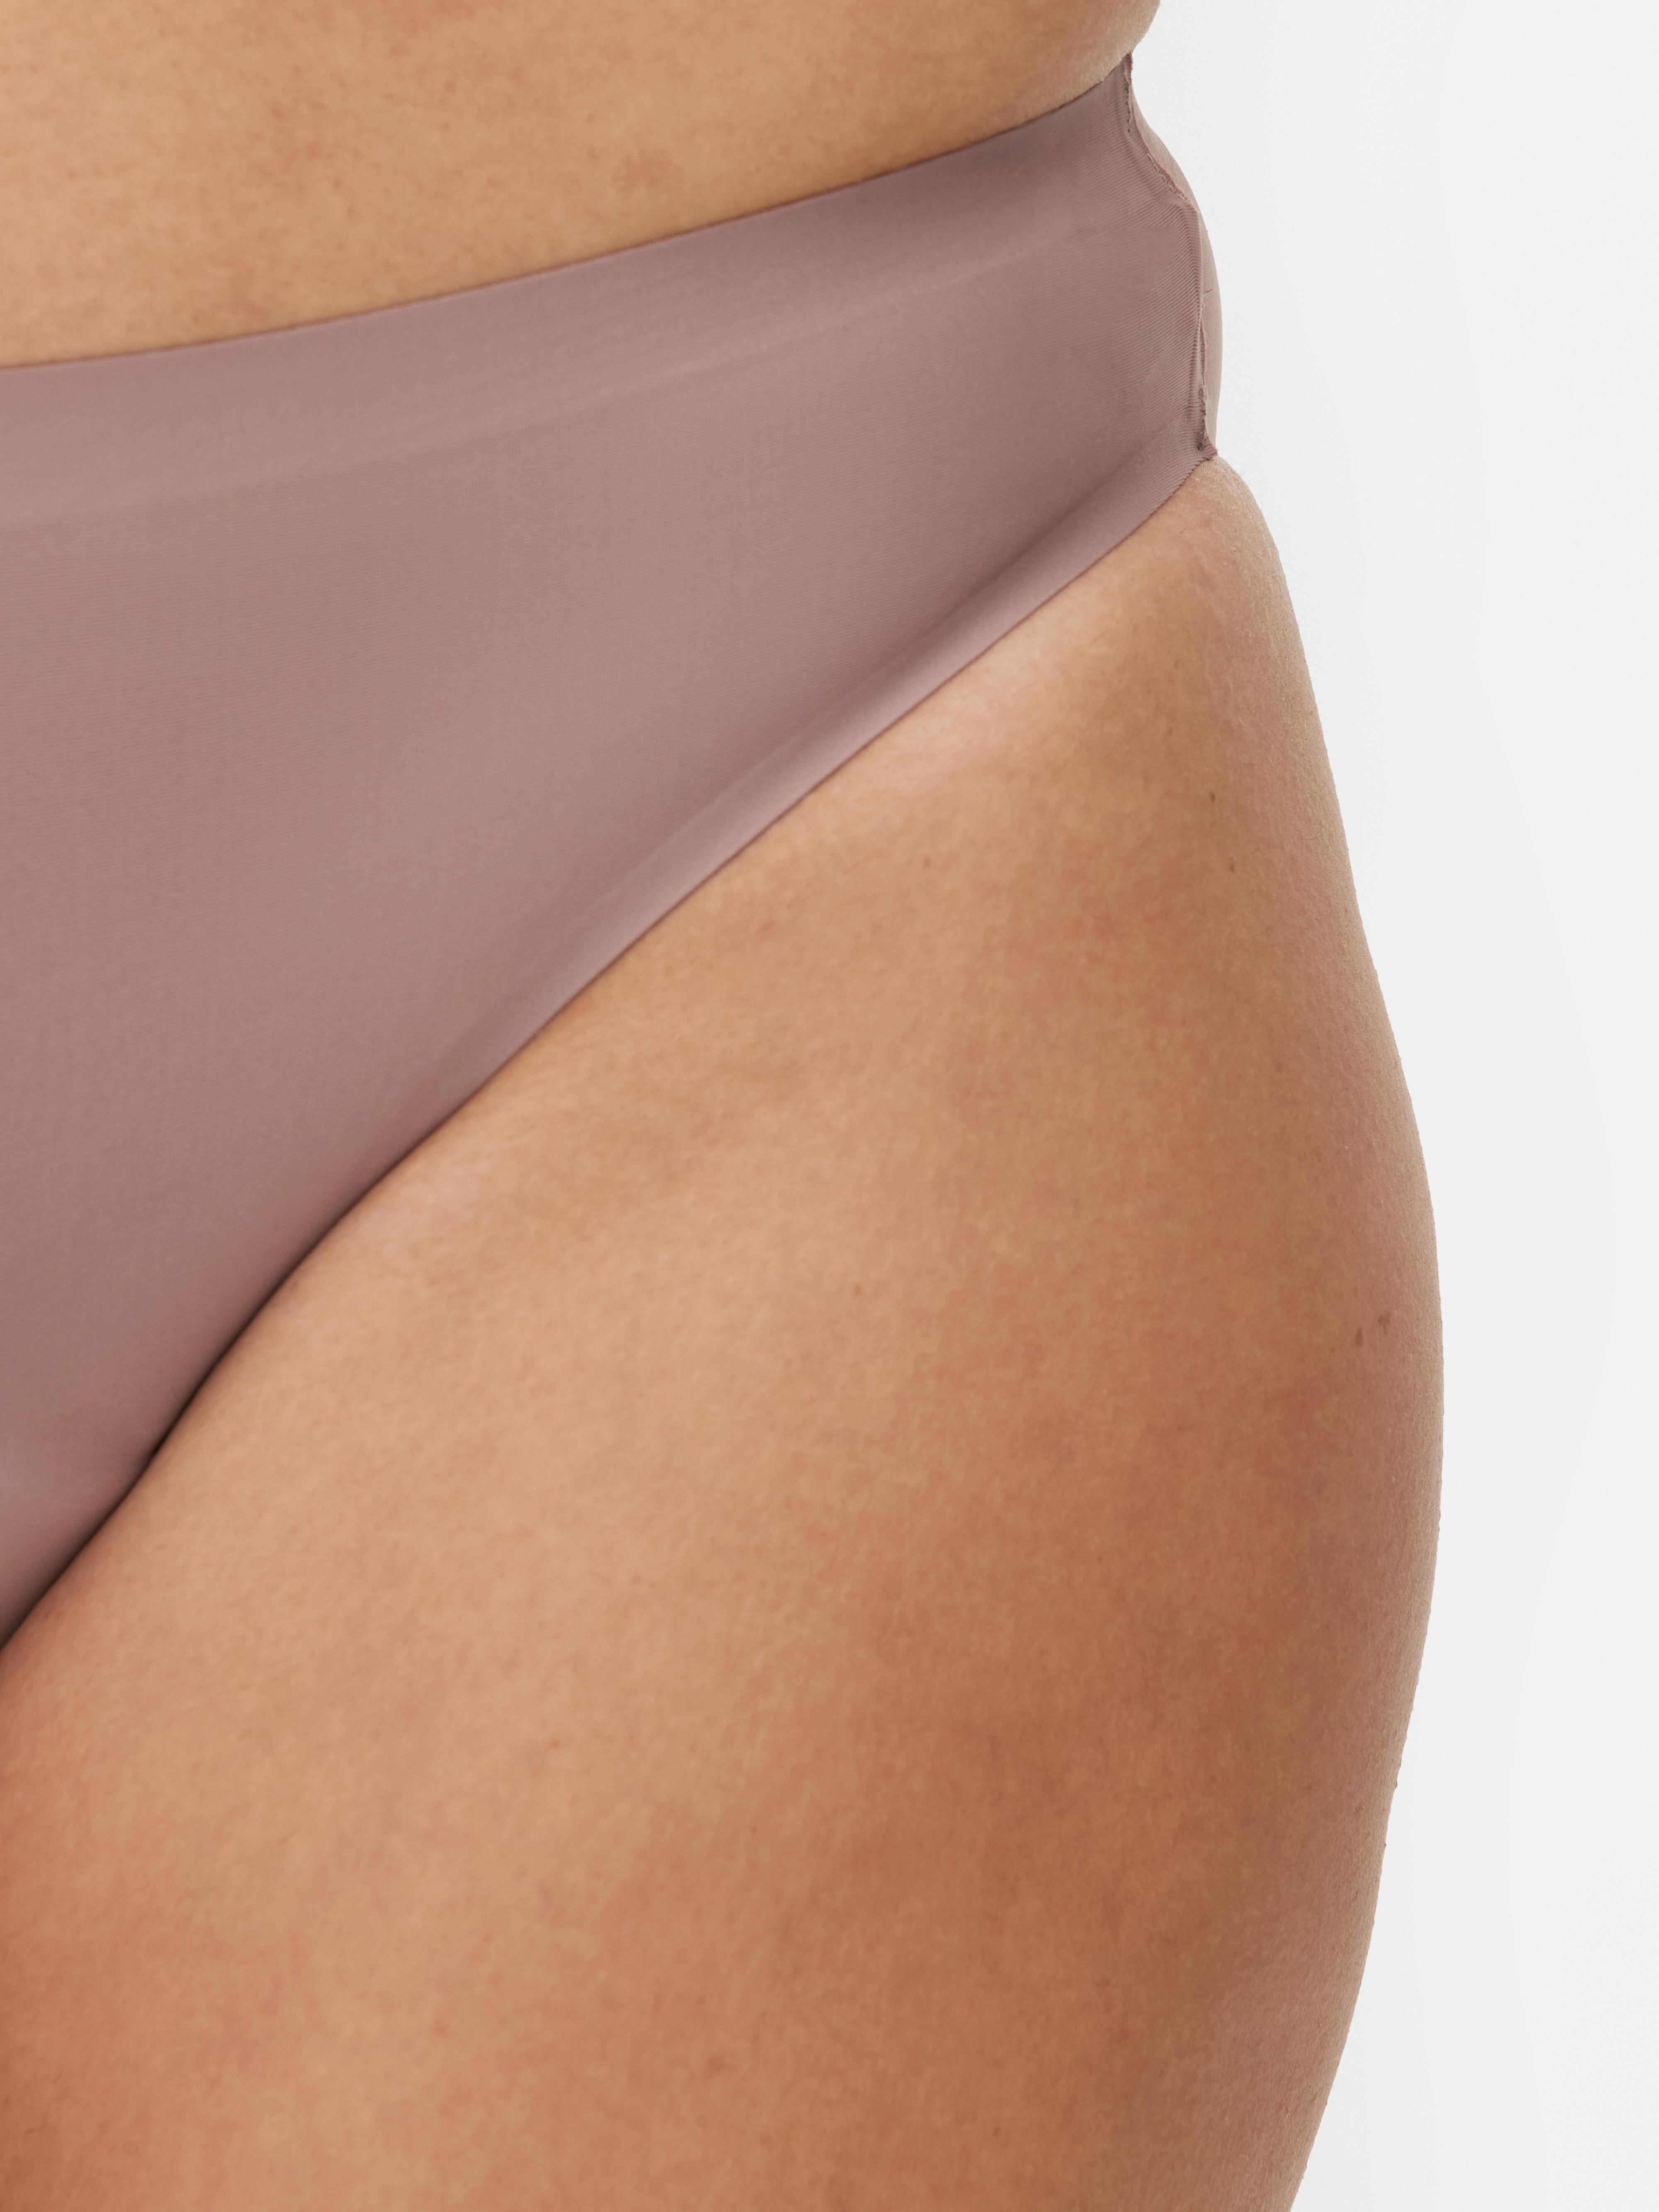 Primark Women's Briefs with Period Underwear - What's New - Late